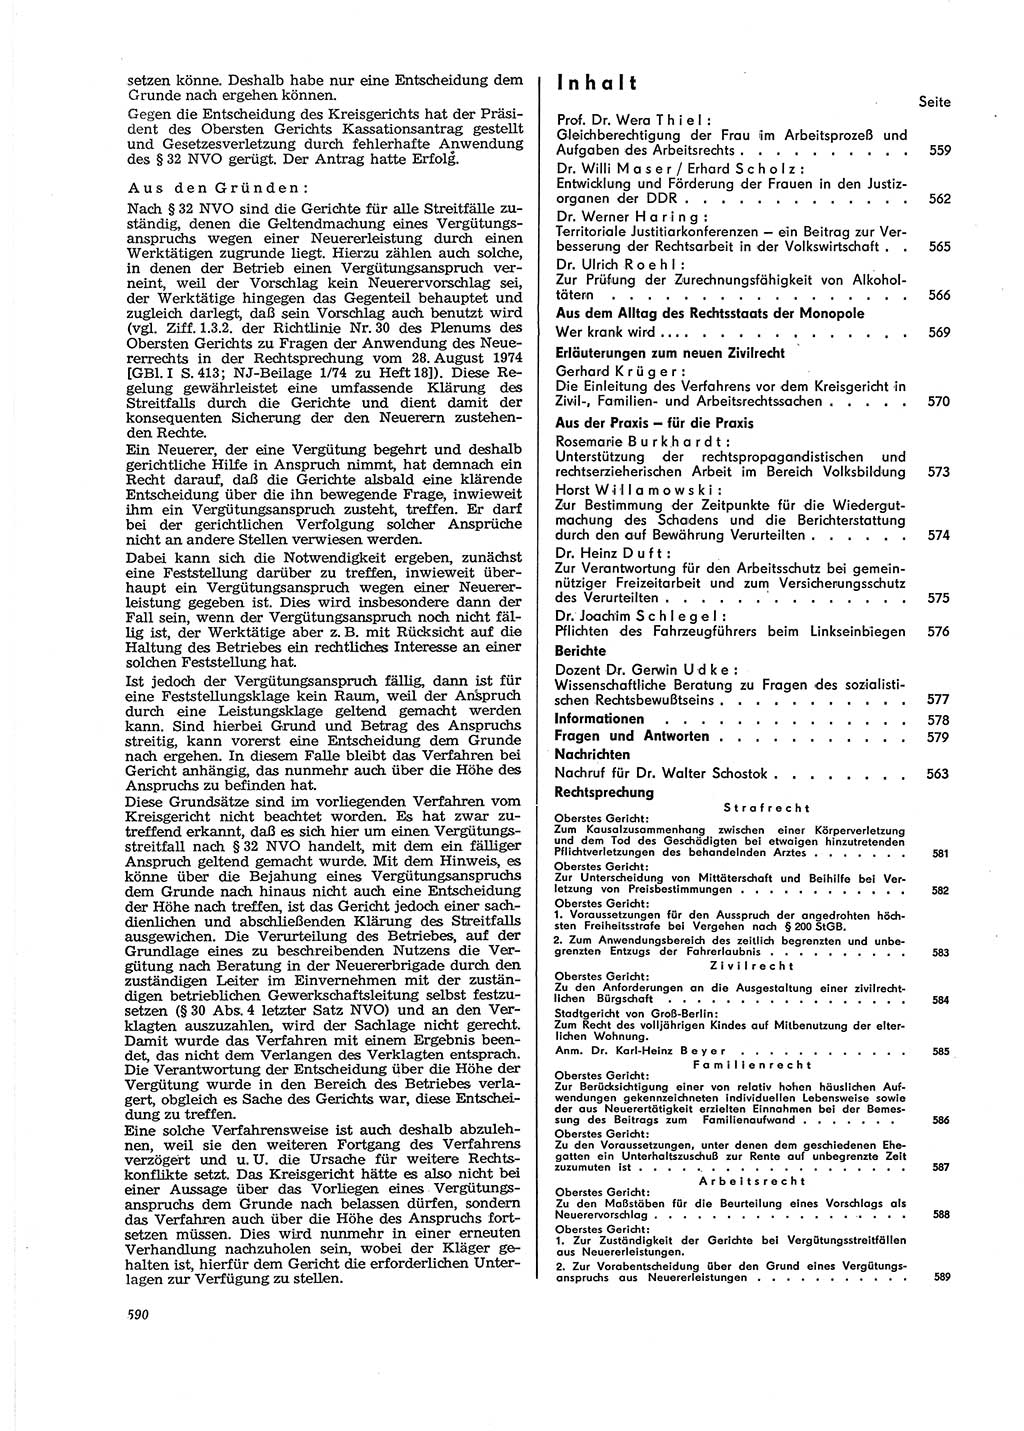 Neue Justiz (NJ), Zeitschrift für Recht und Rechtswissenschaft [Deutsche Demokratische Republik (DDR)], 29. Jahrgang 1975, Seite 590 (NJ DDR 1975, S. 590)